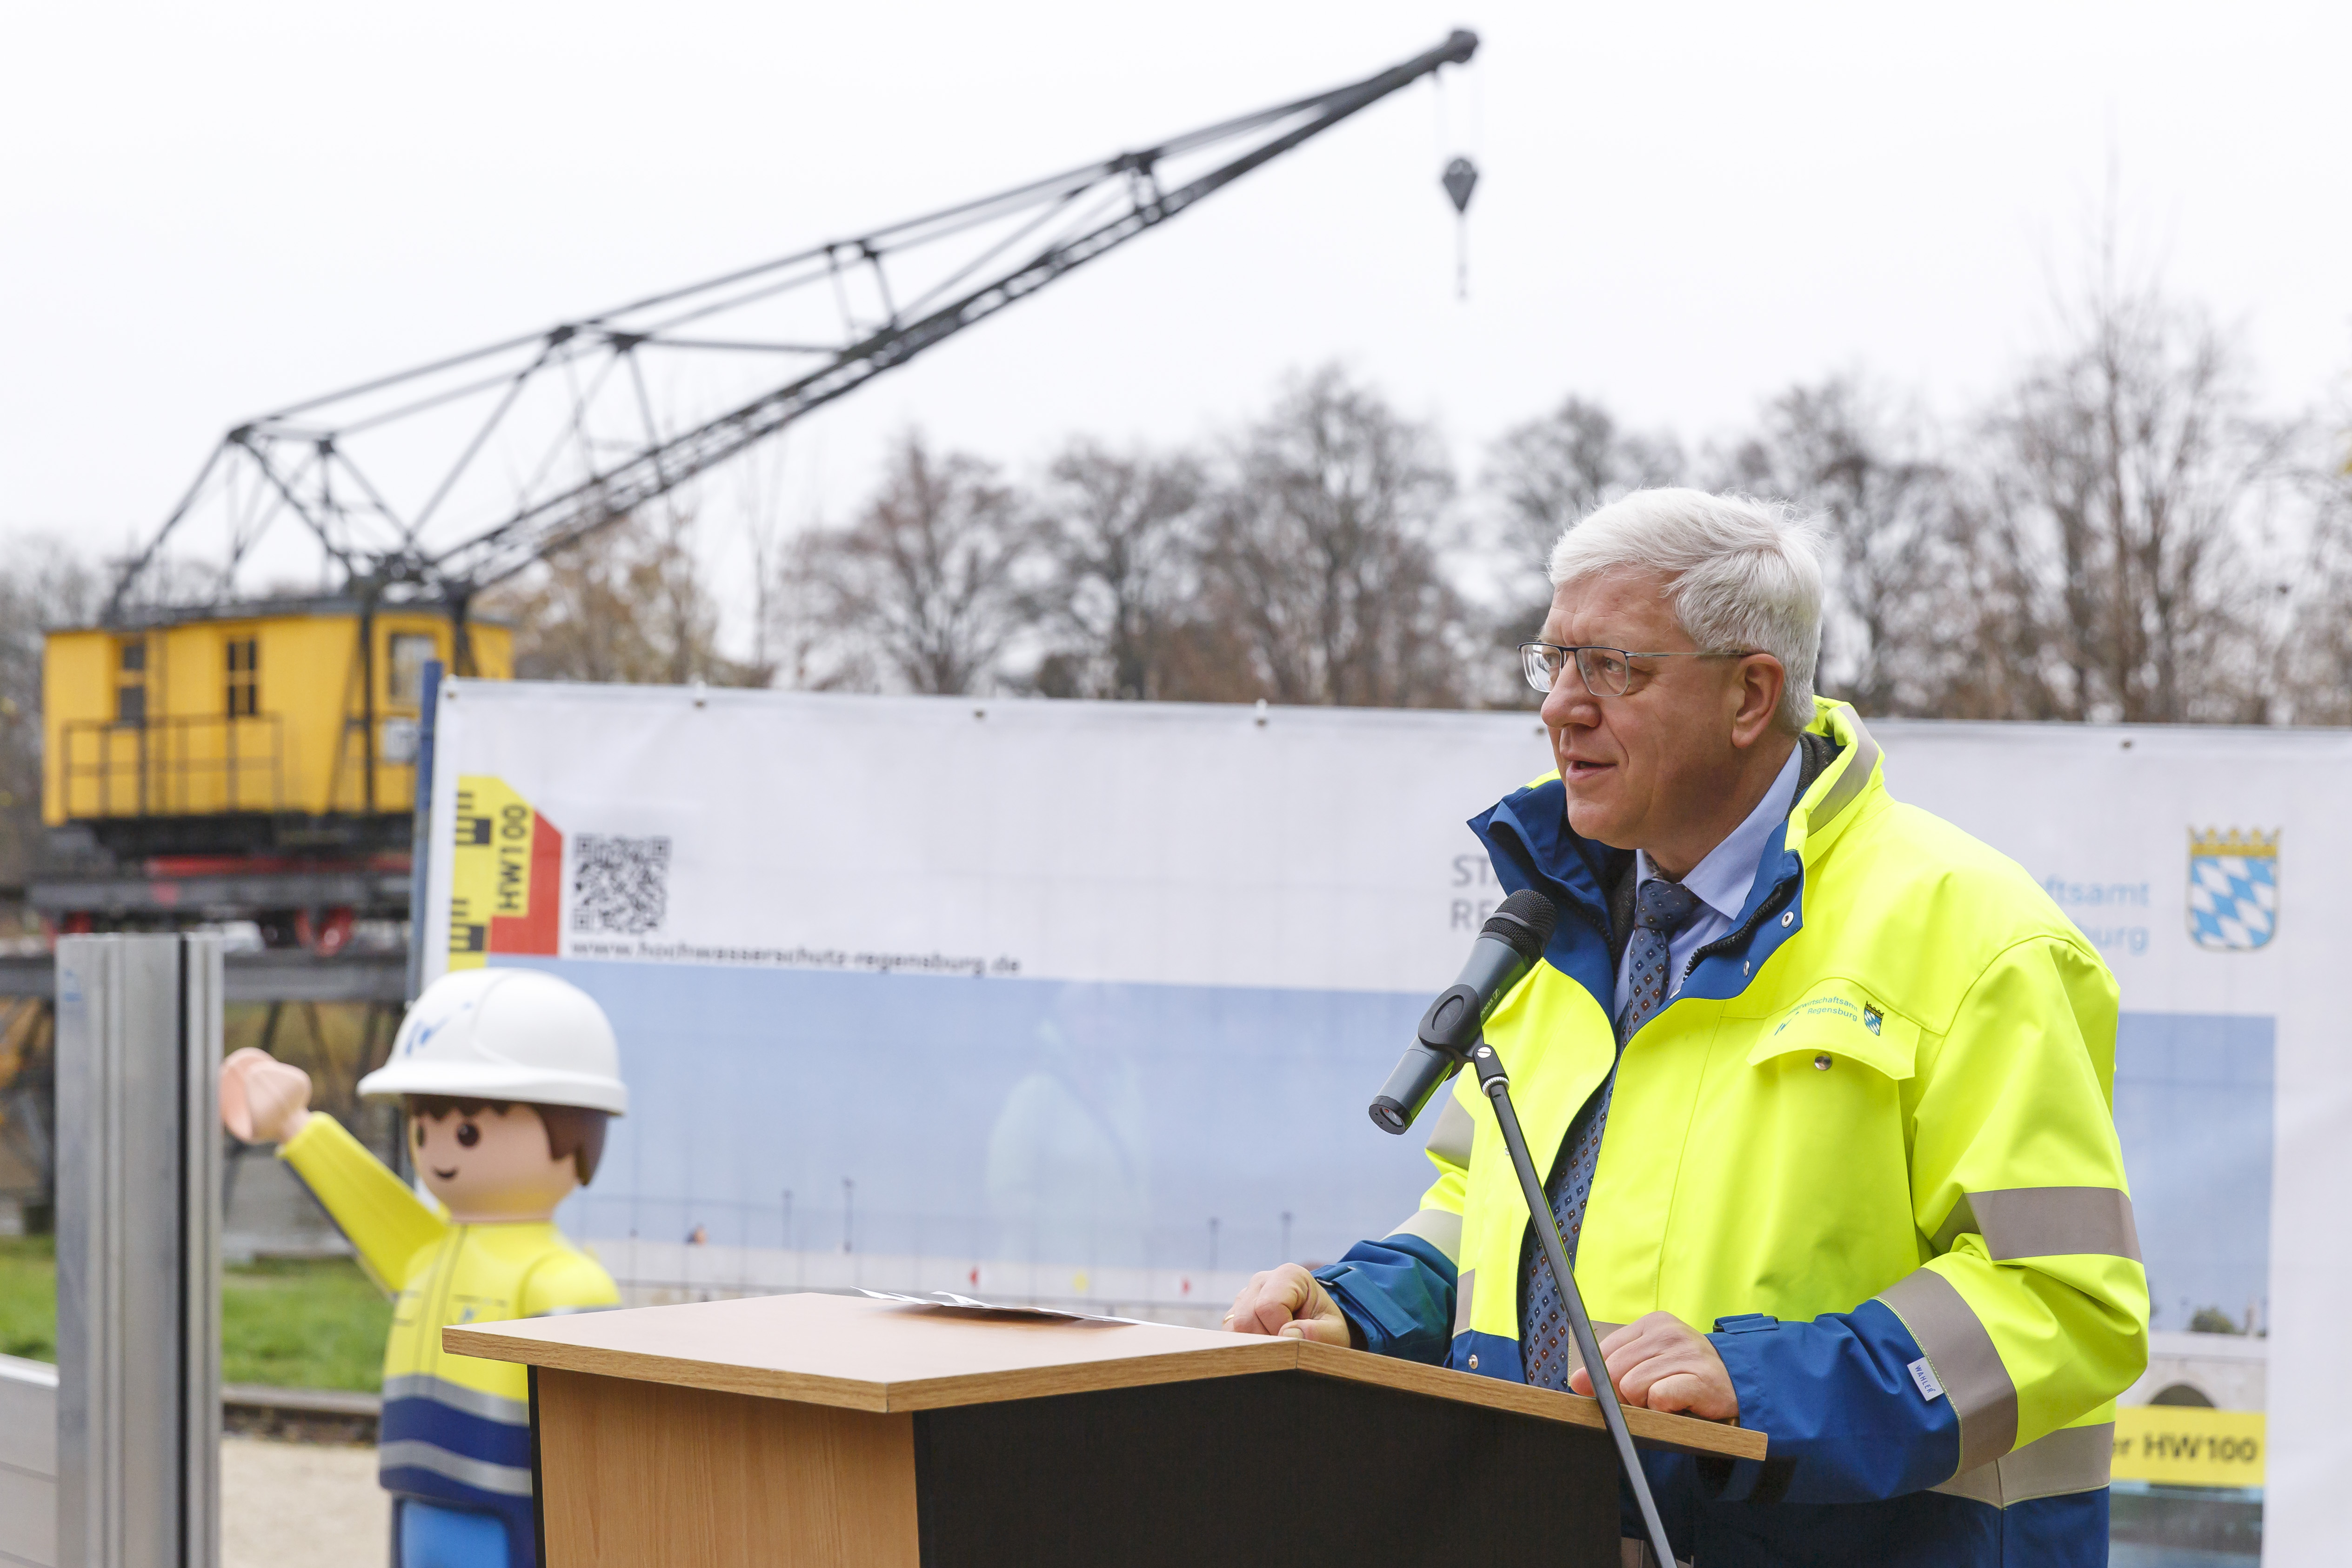 Rechts im Bild der Behördenleiter des WWAs am Rednerpult, dahinter ein alter, gelber Hafenkran, das Playmobilmännchen und ein Plakat zum Hochwasserschutz Regensburg.